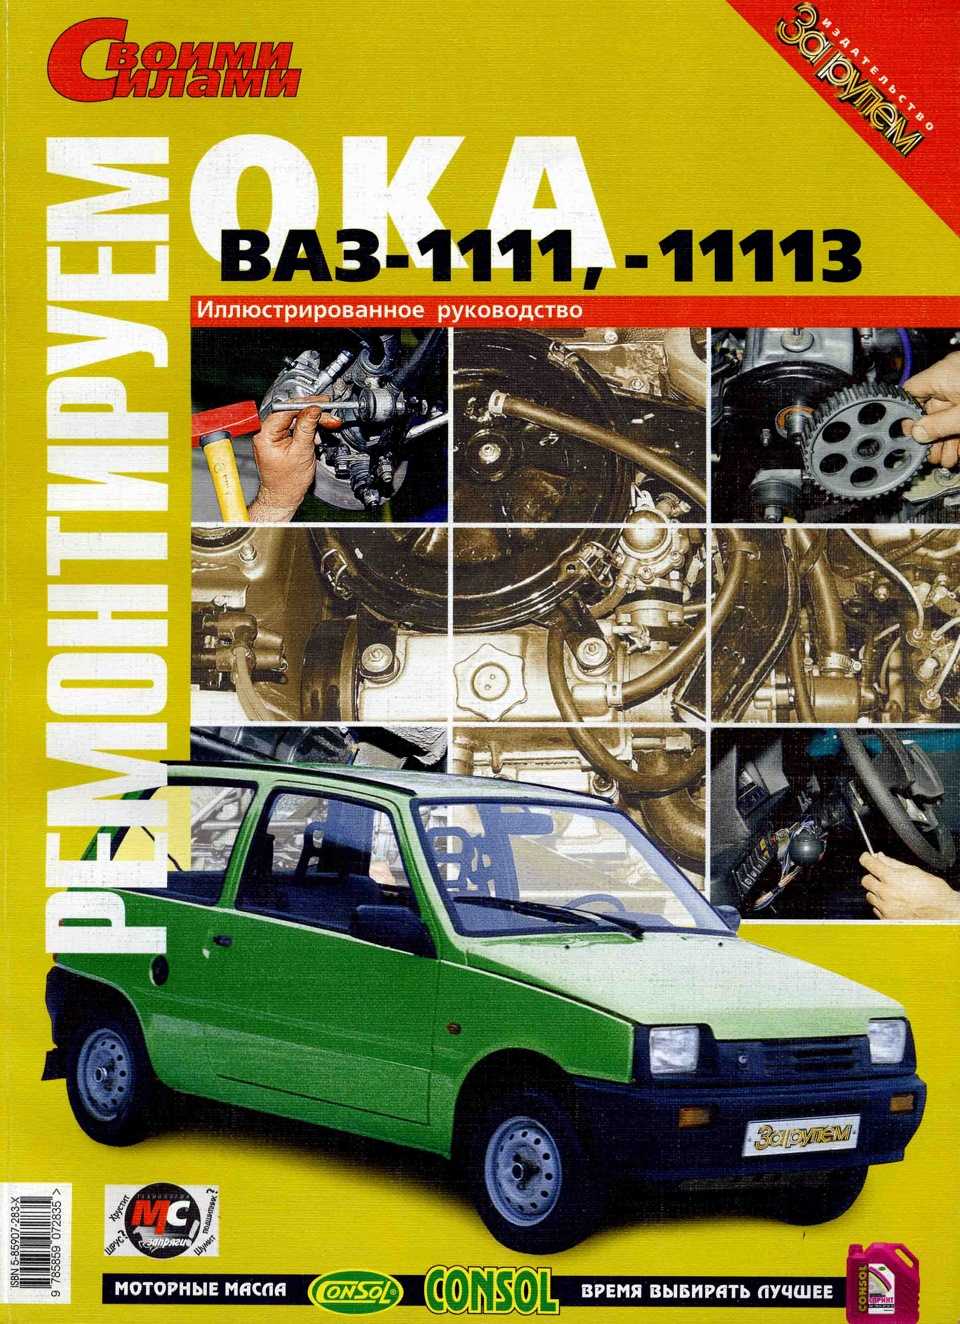 Руководство по ремонту ваз 1111 (ока) 1988-2003 г.в. полное описание, схемы, фото, технические характеристики